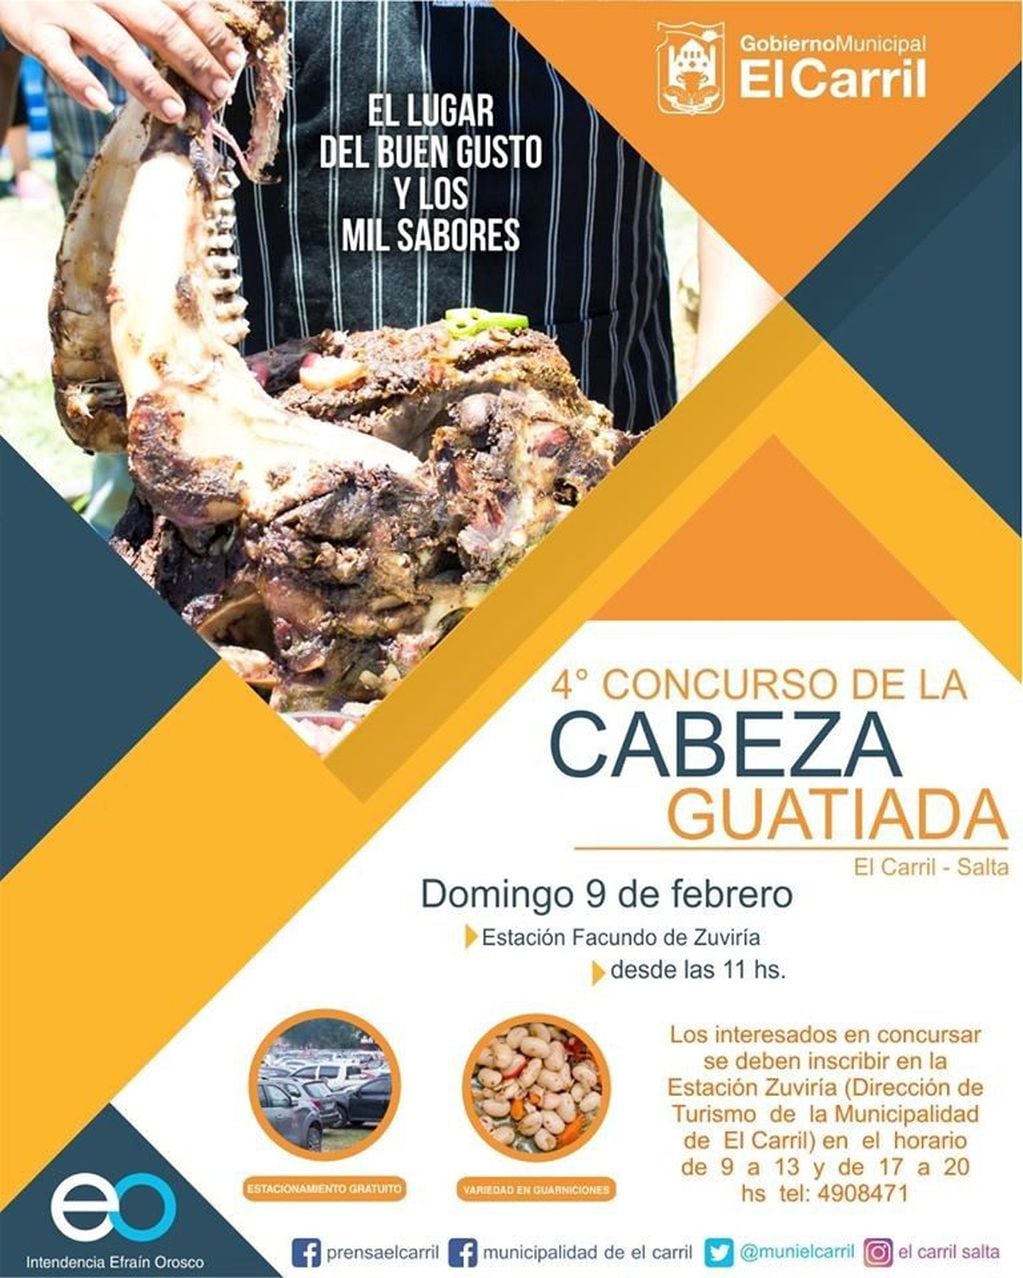 Concurso de la Cabeza Guateada en El Carril.